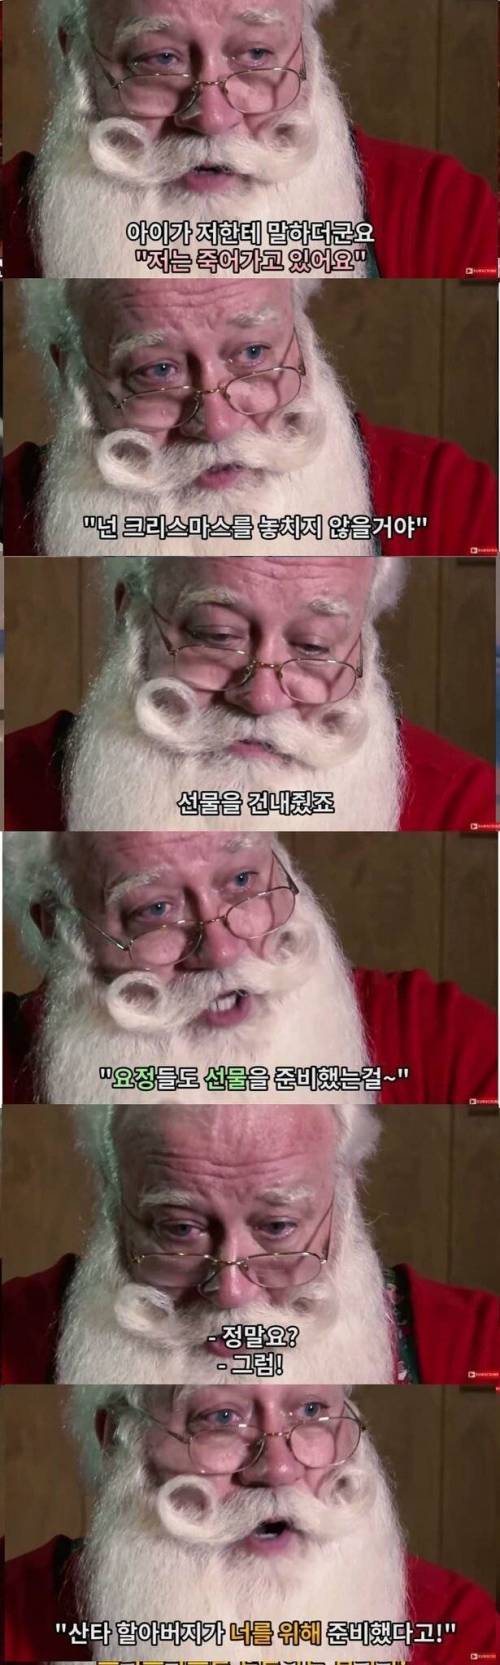 [스압] 산타를 만난 아이.jpg